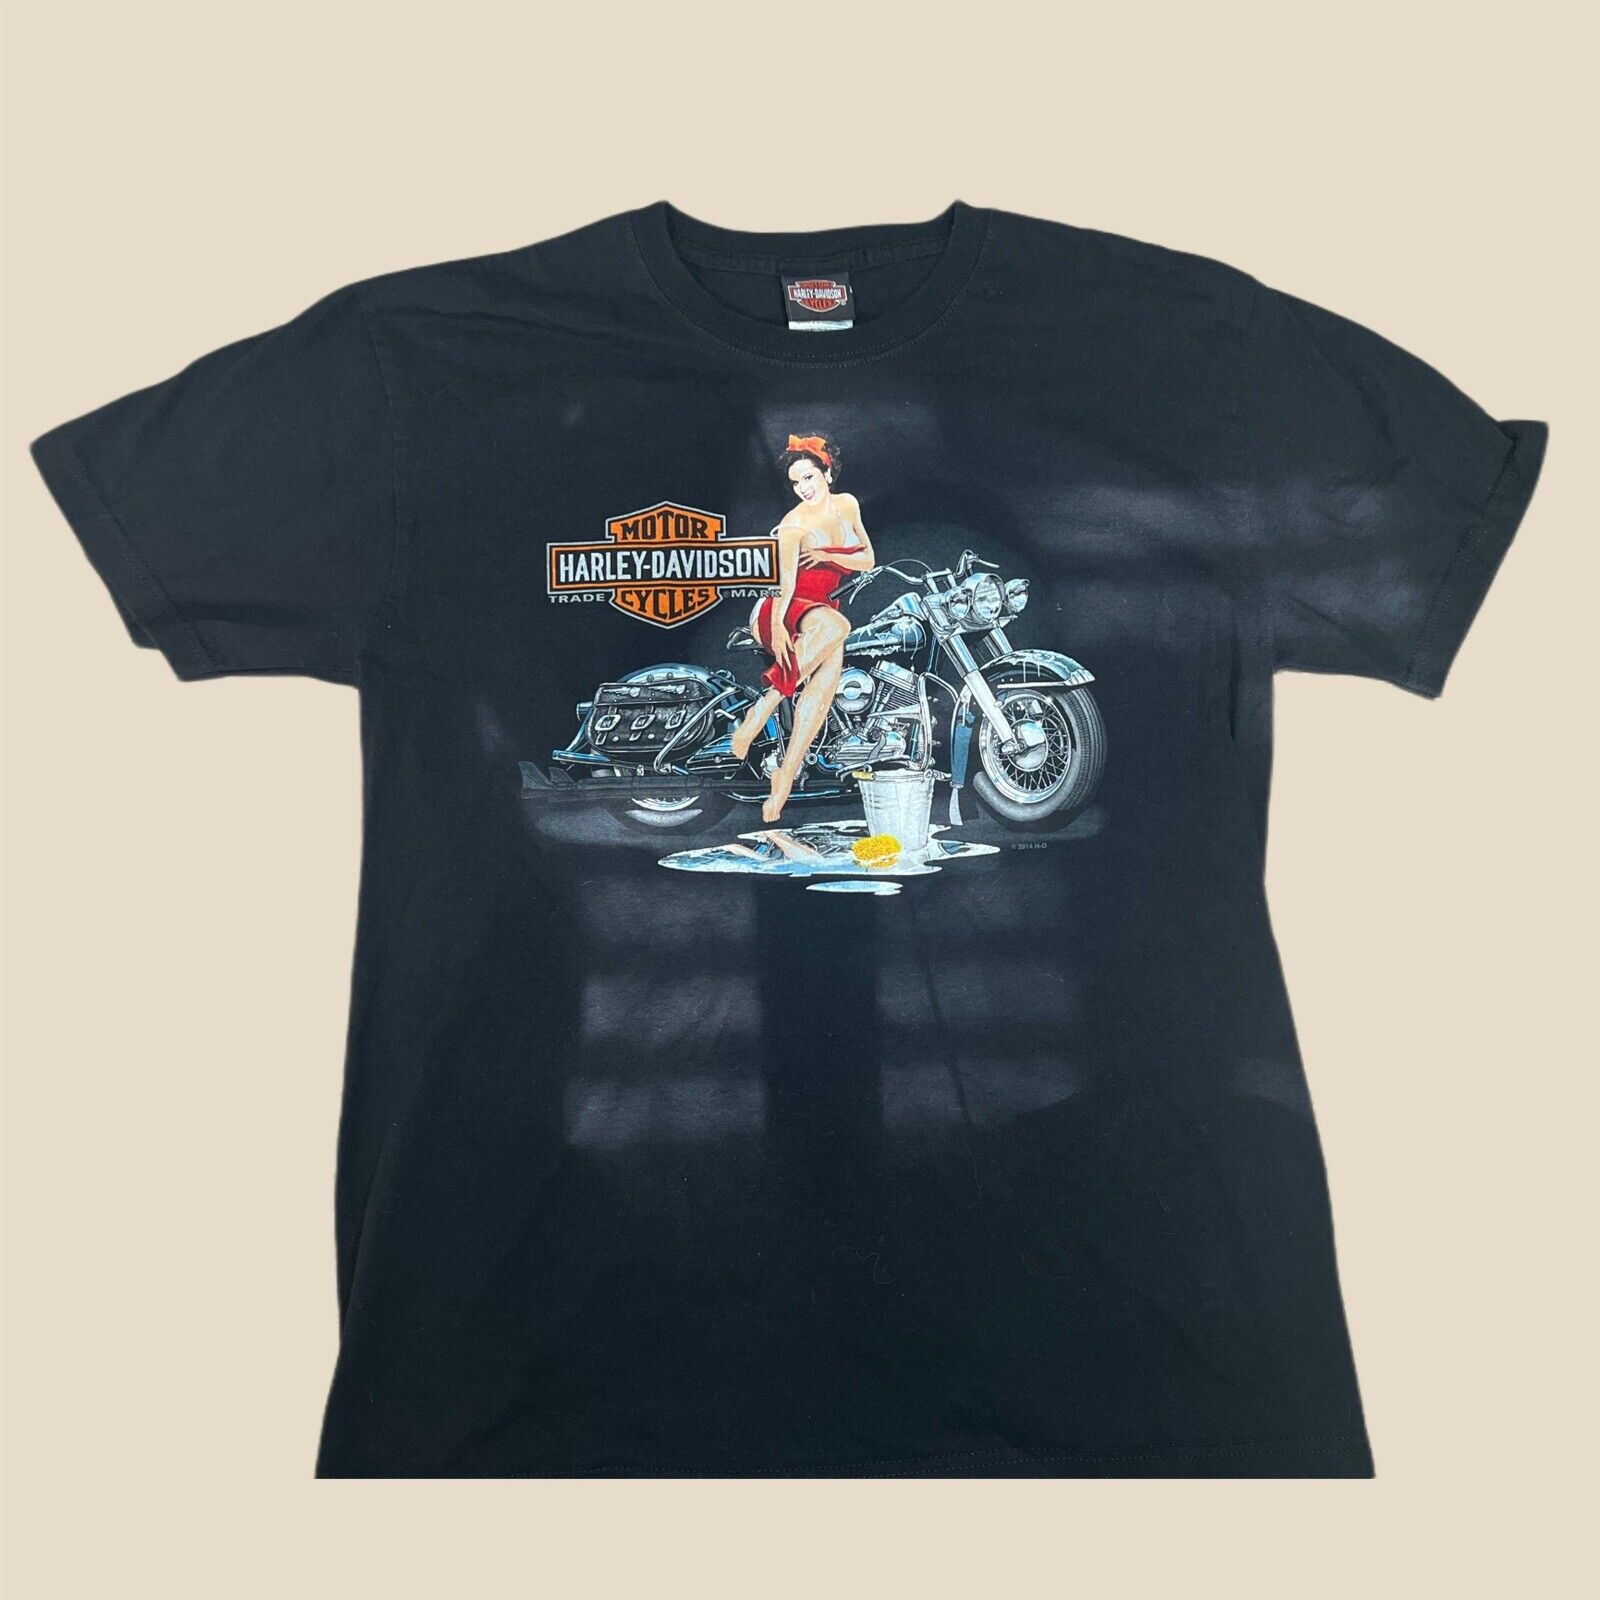 Vintage Harley Davidson “Timeless Legends” Medina Ohio Mens L Shirt